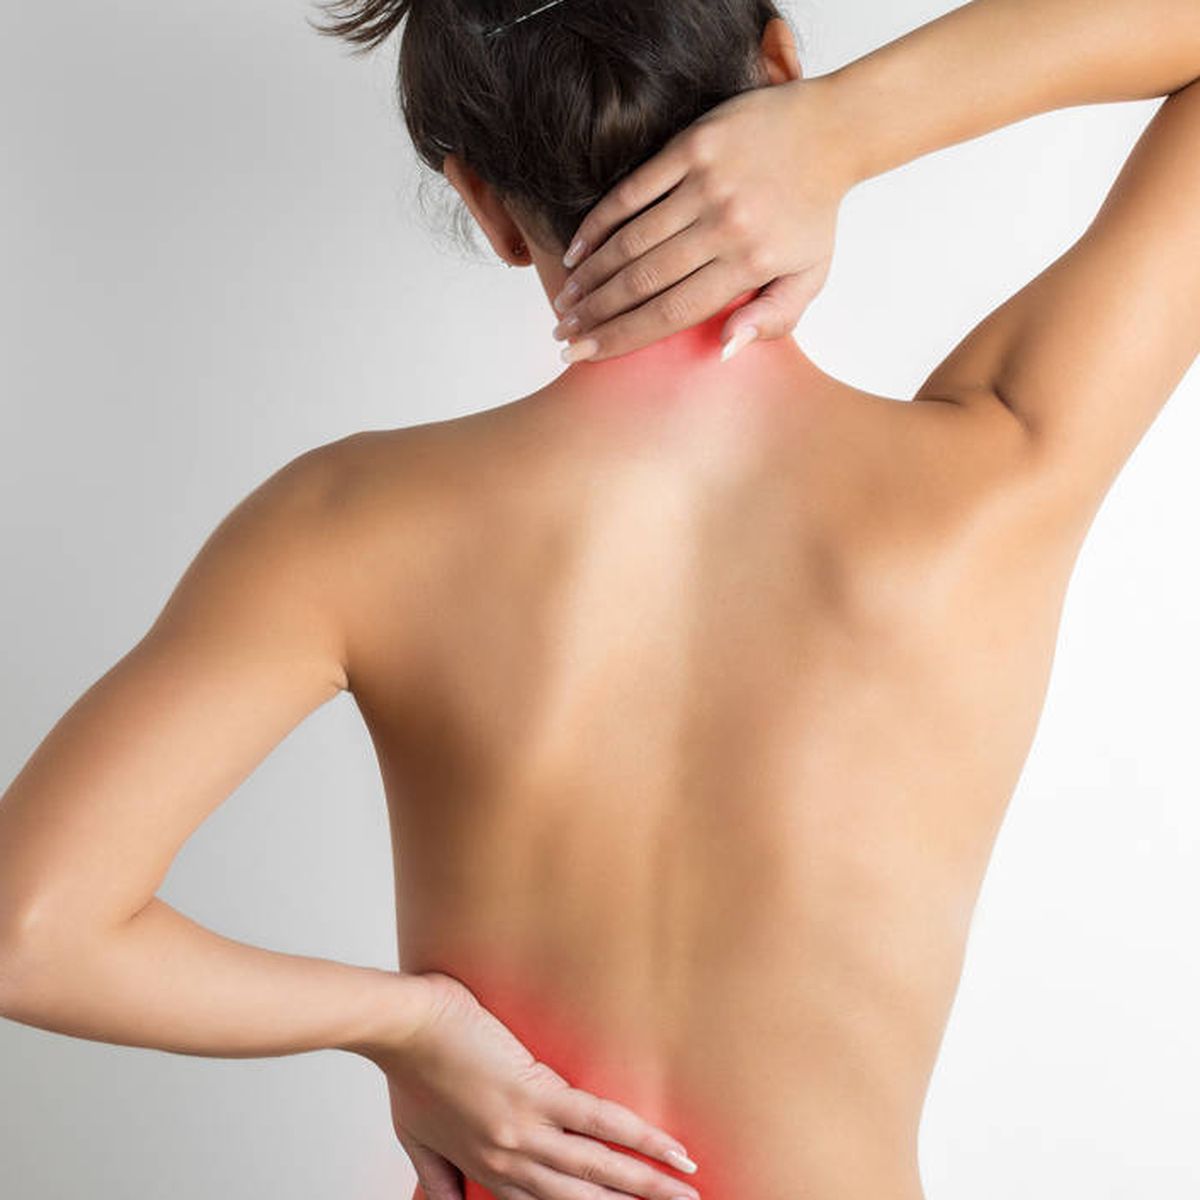 Lesiones musculares en la espalda de los distintos deportes